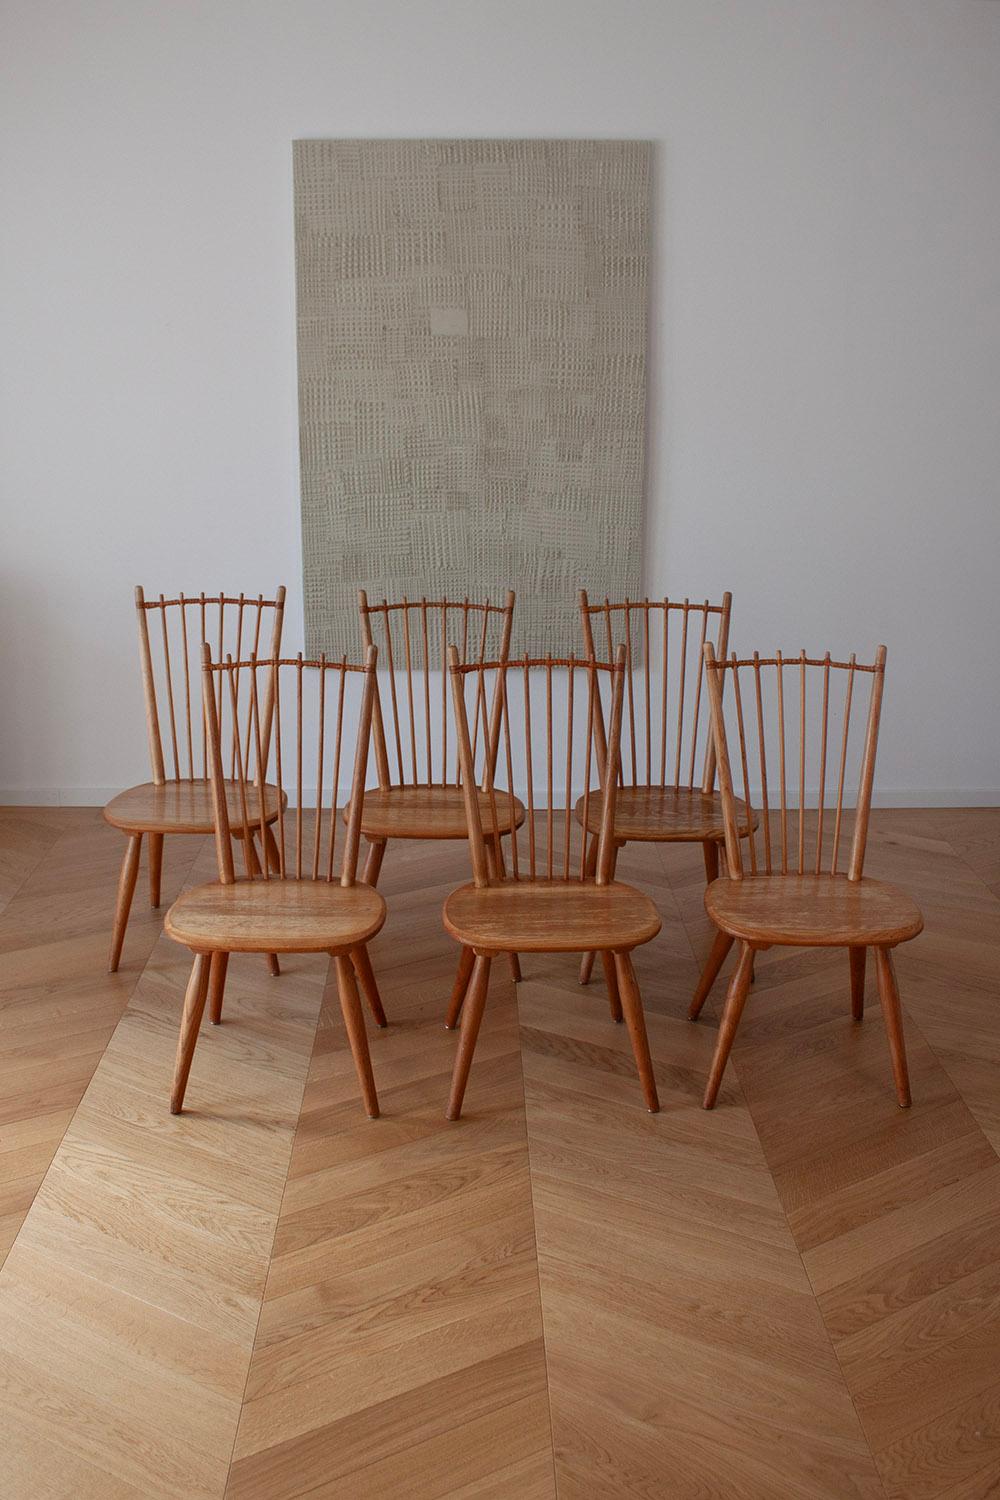 Dieser seltene Satz von 6 Esszimmerstühlen wurde von Albert Haberer entworfen und von Hermann Fleiner, Deutschland, um 1950 hergestellt. Diese Stühle sind mit viel Liebe zum Detail gefertigt. Die Spindeln der Rückenlehne sind kunstvoll mit einem